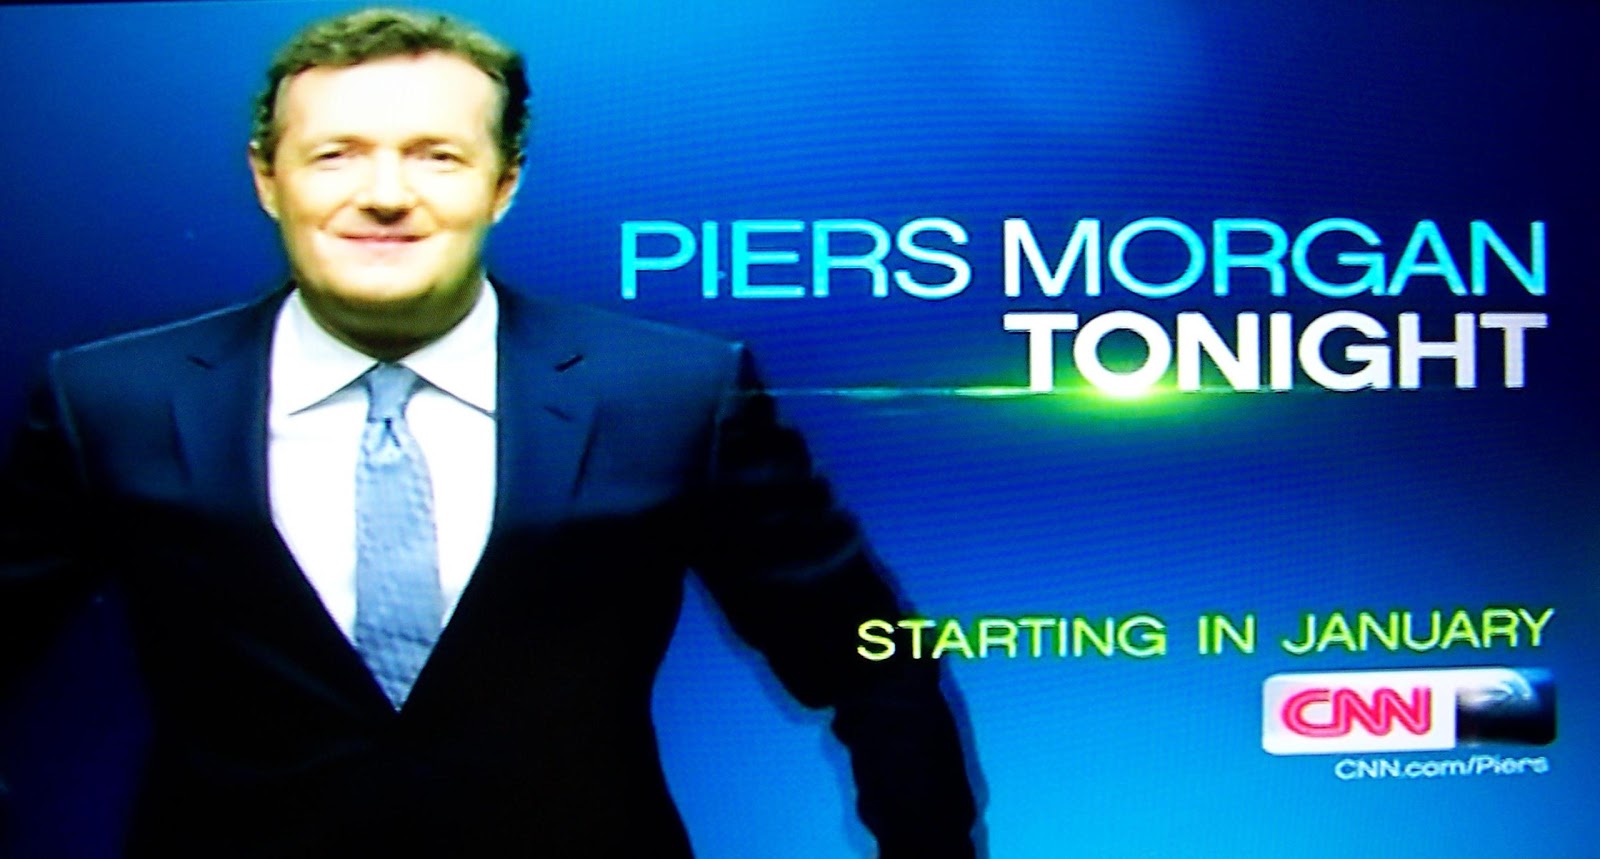 Piers Morgan Tonight movie